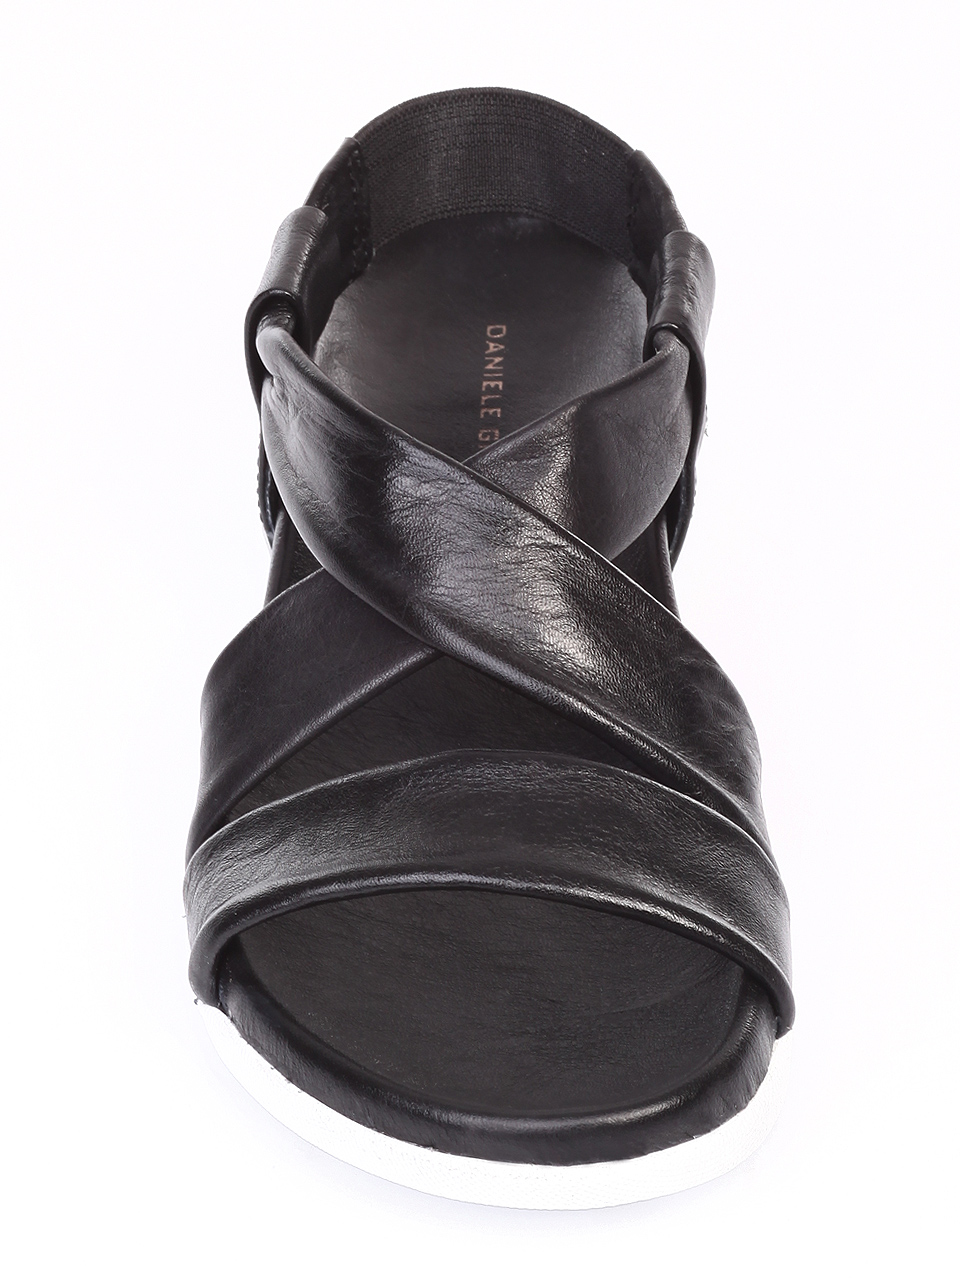 Ежедневни дамски сандали от естествена кожа 4AB-19476 black